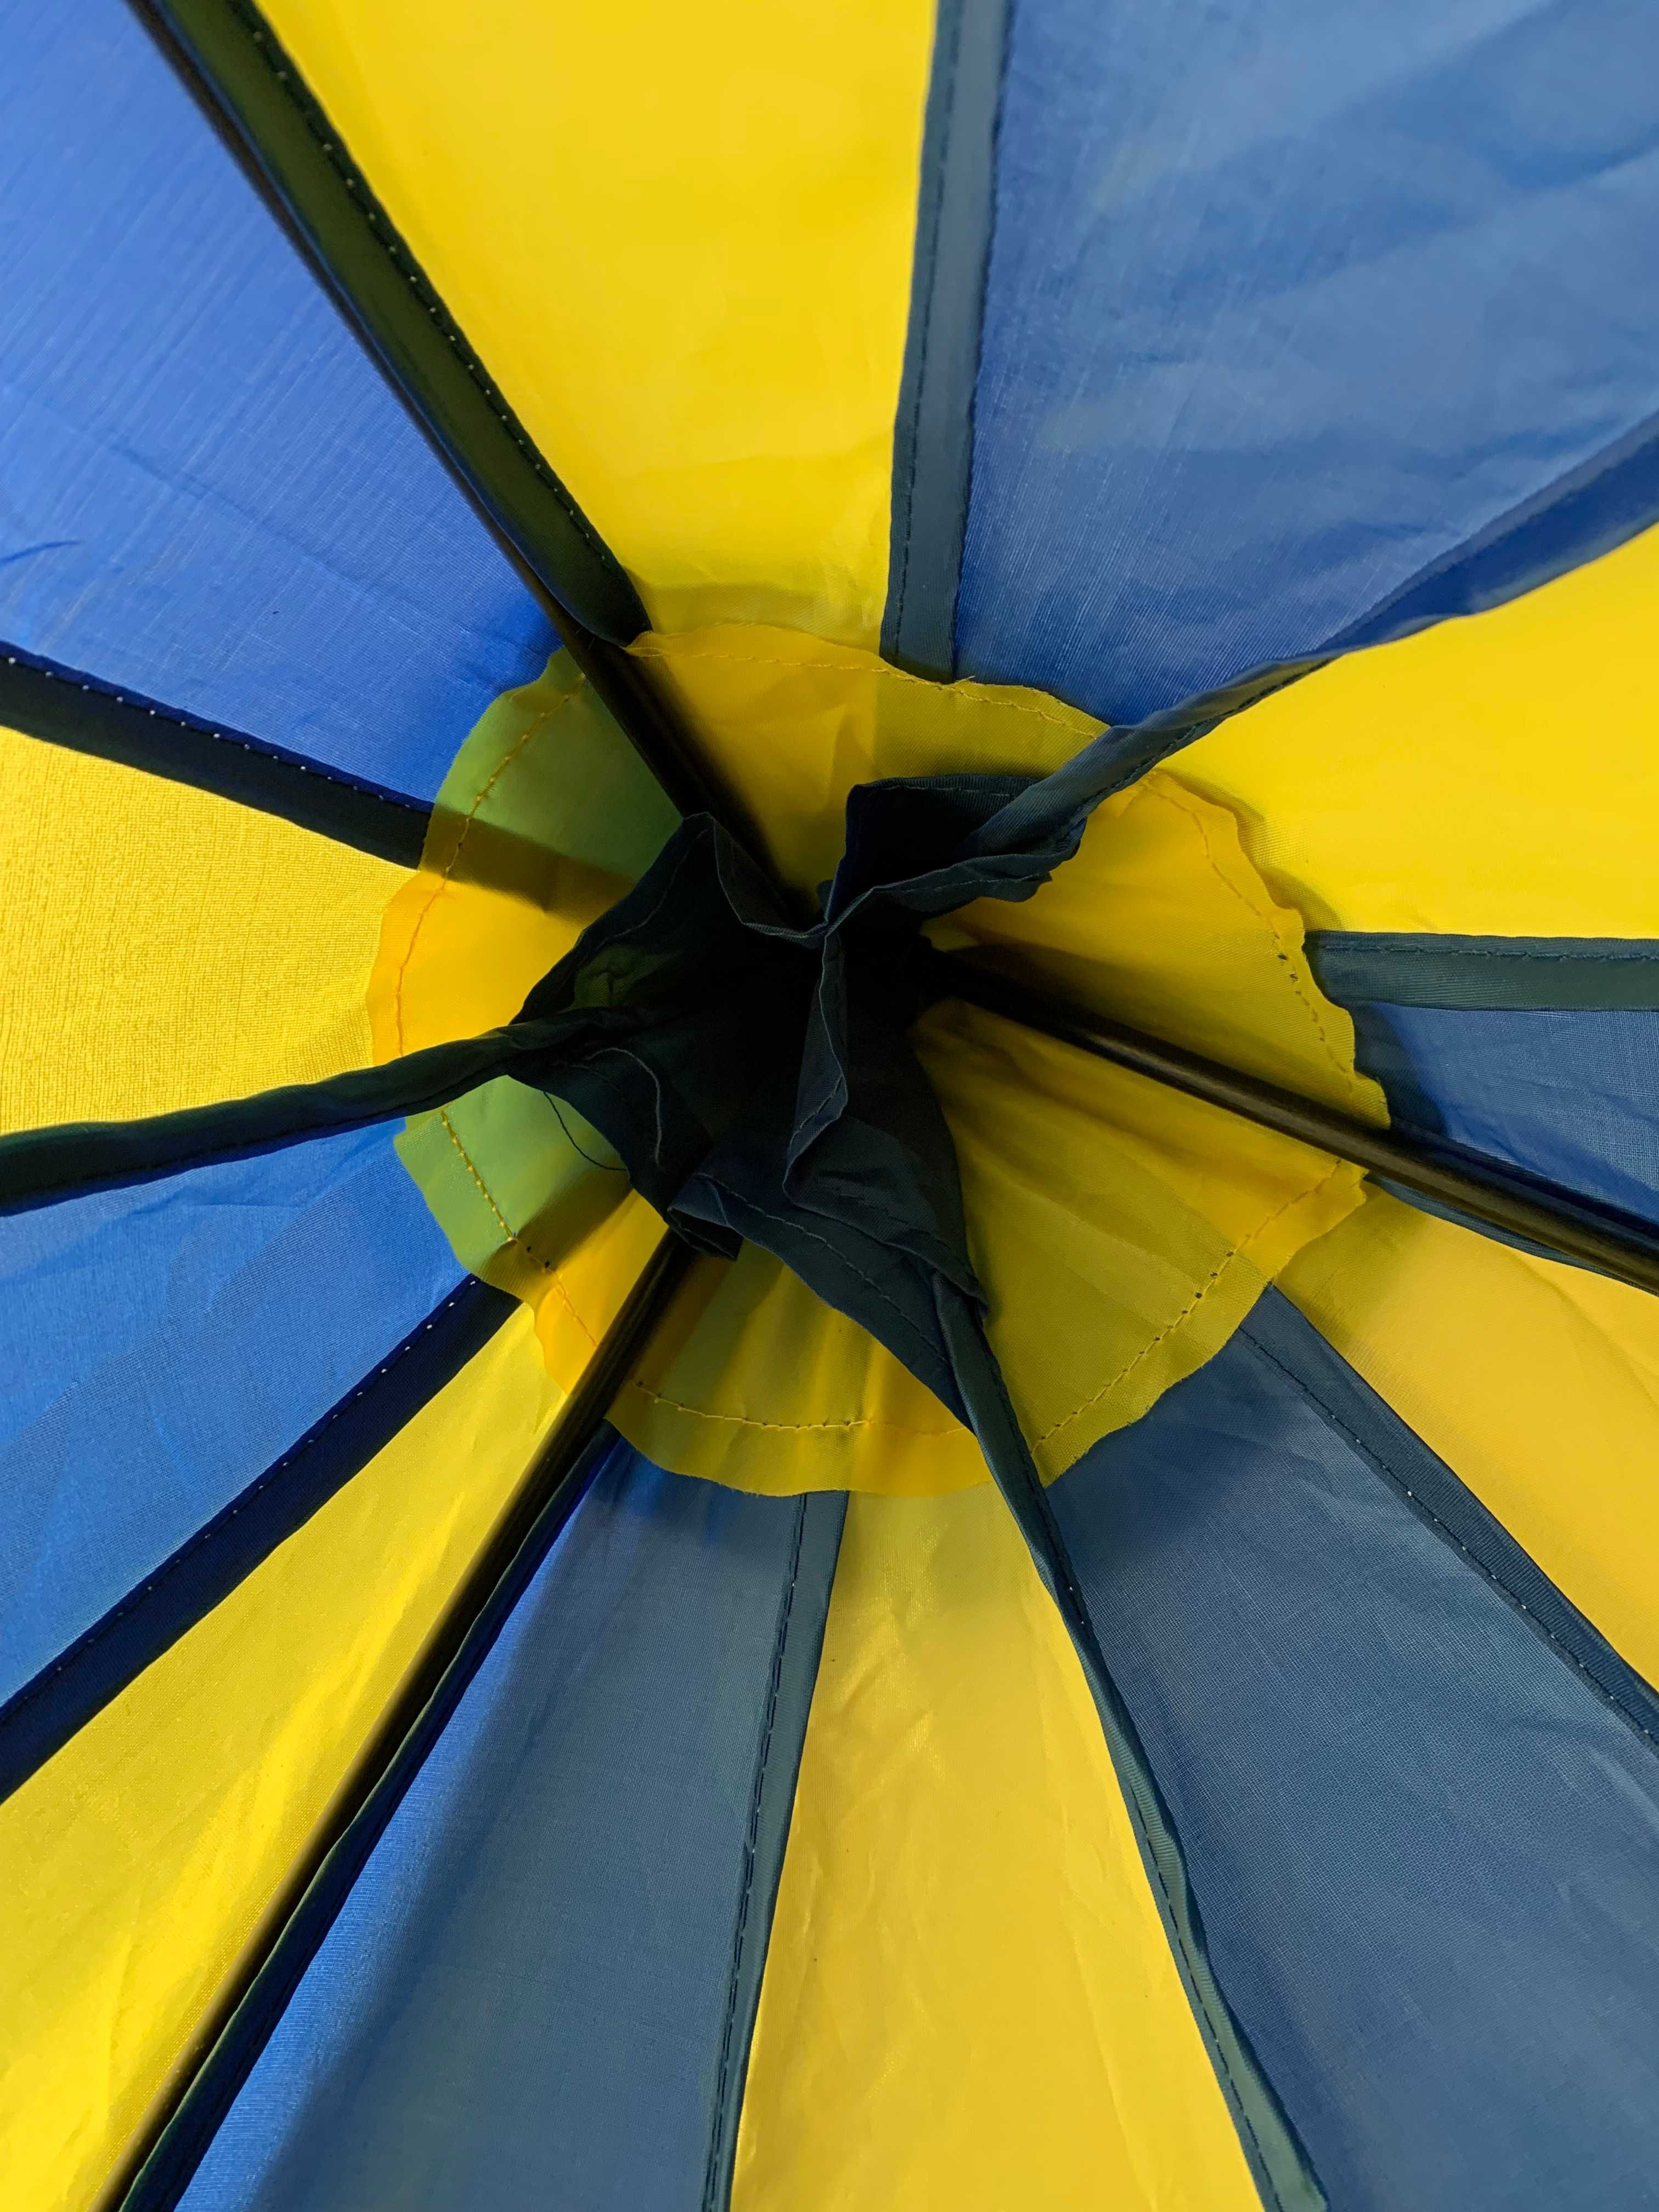 Namiot dla dzieci niebiesko-żółty; średnica 100 cm